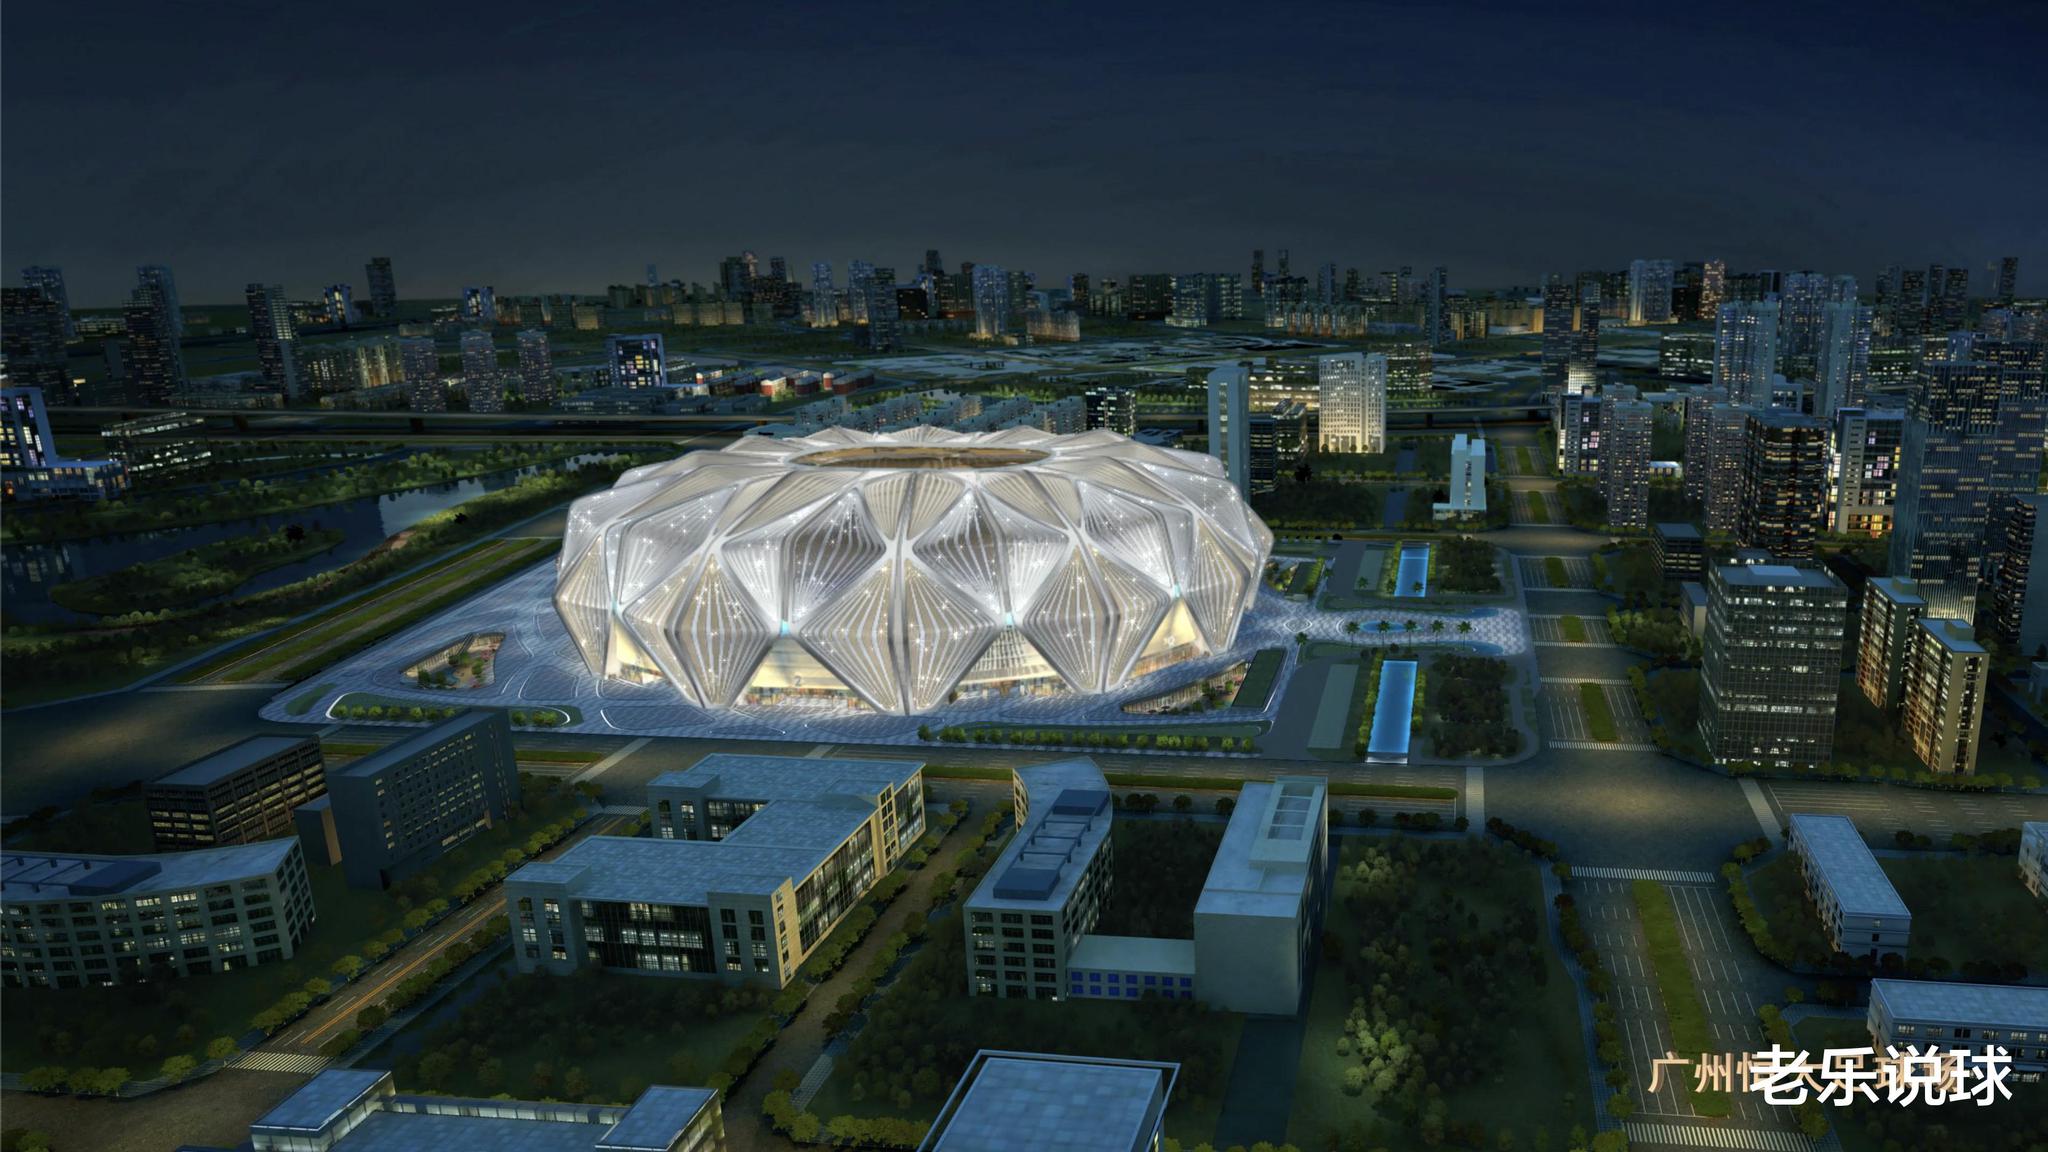 广州恒大足球场灯光效果片,刷屏让世界发现中国之美!